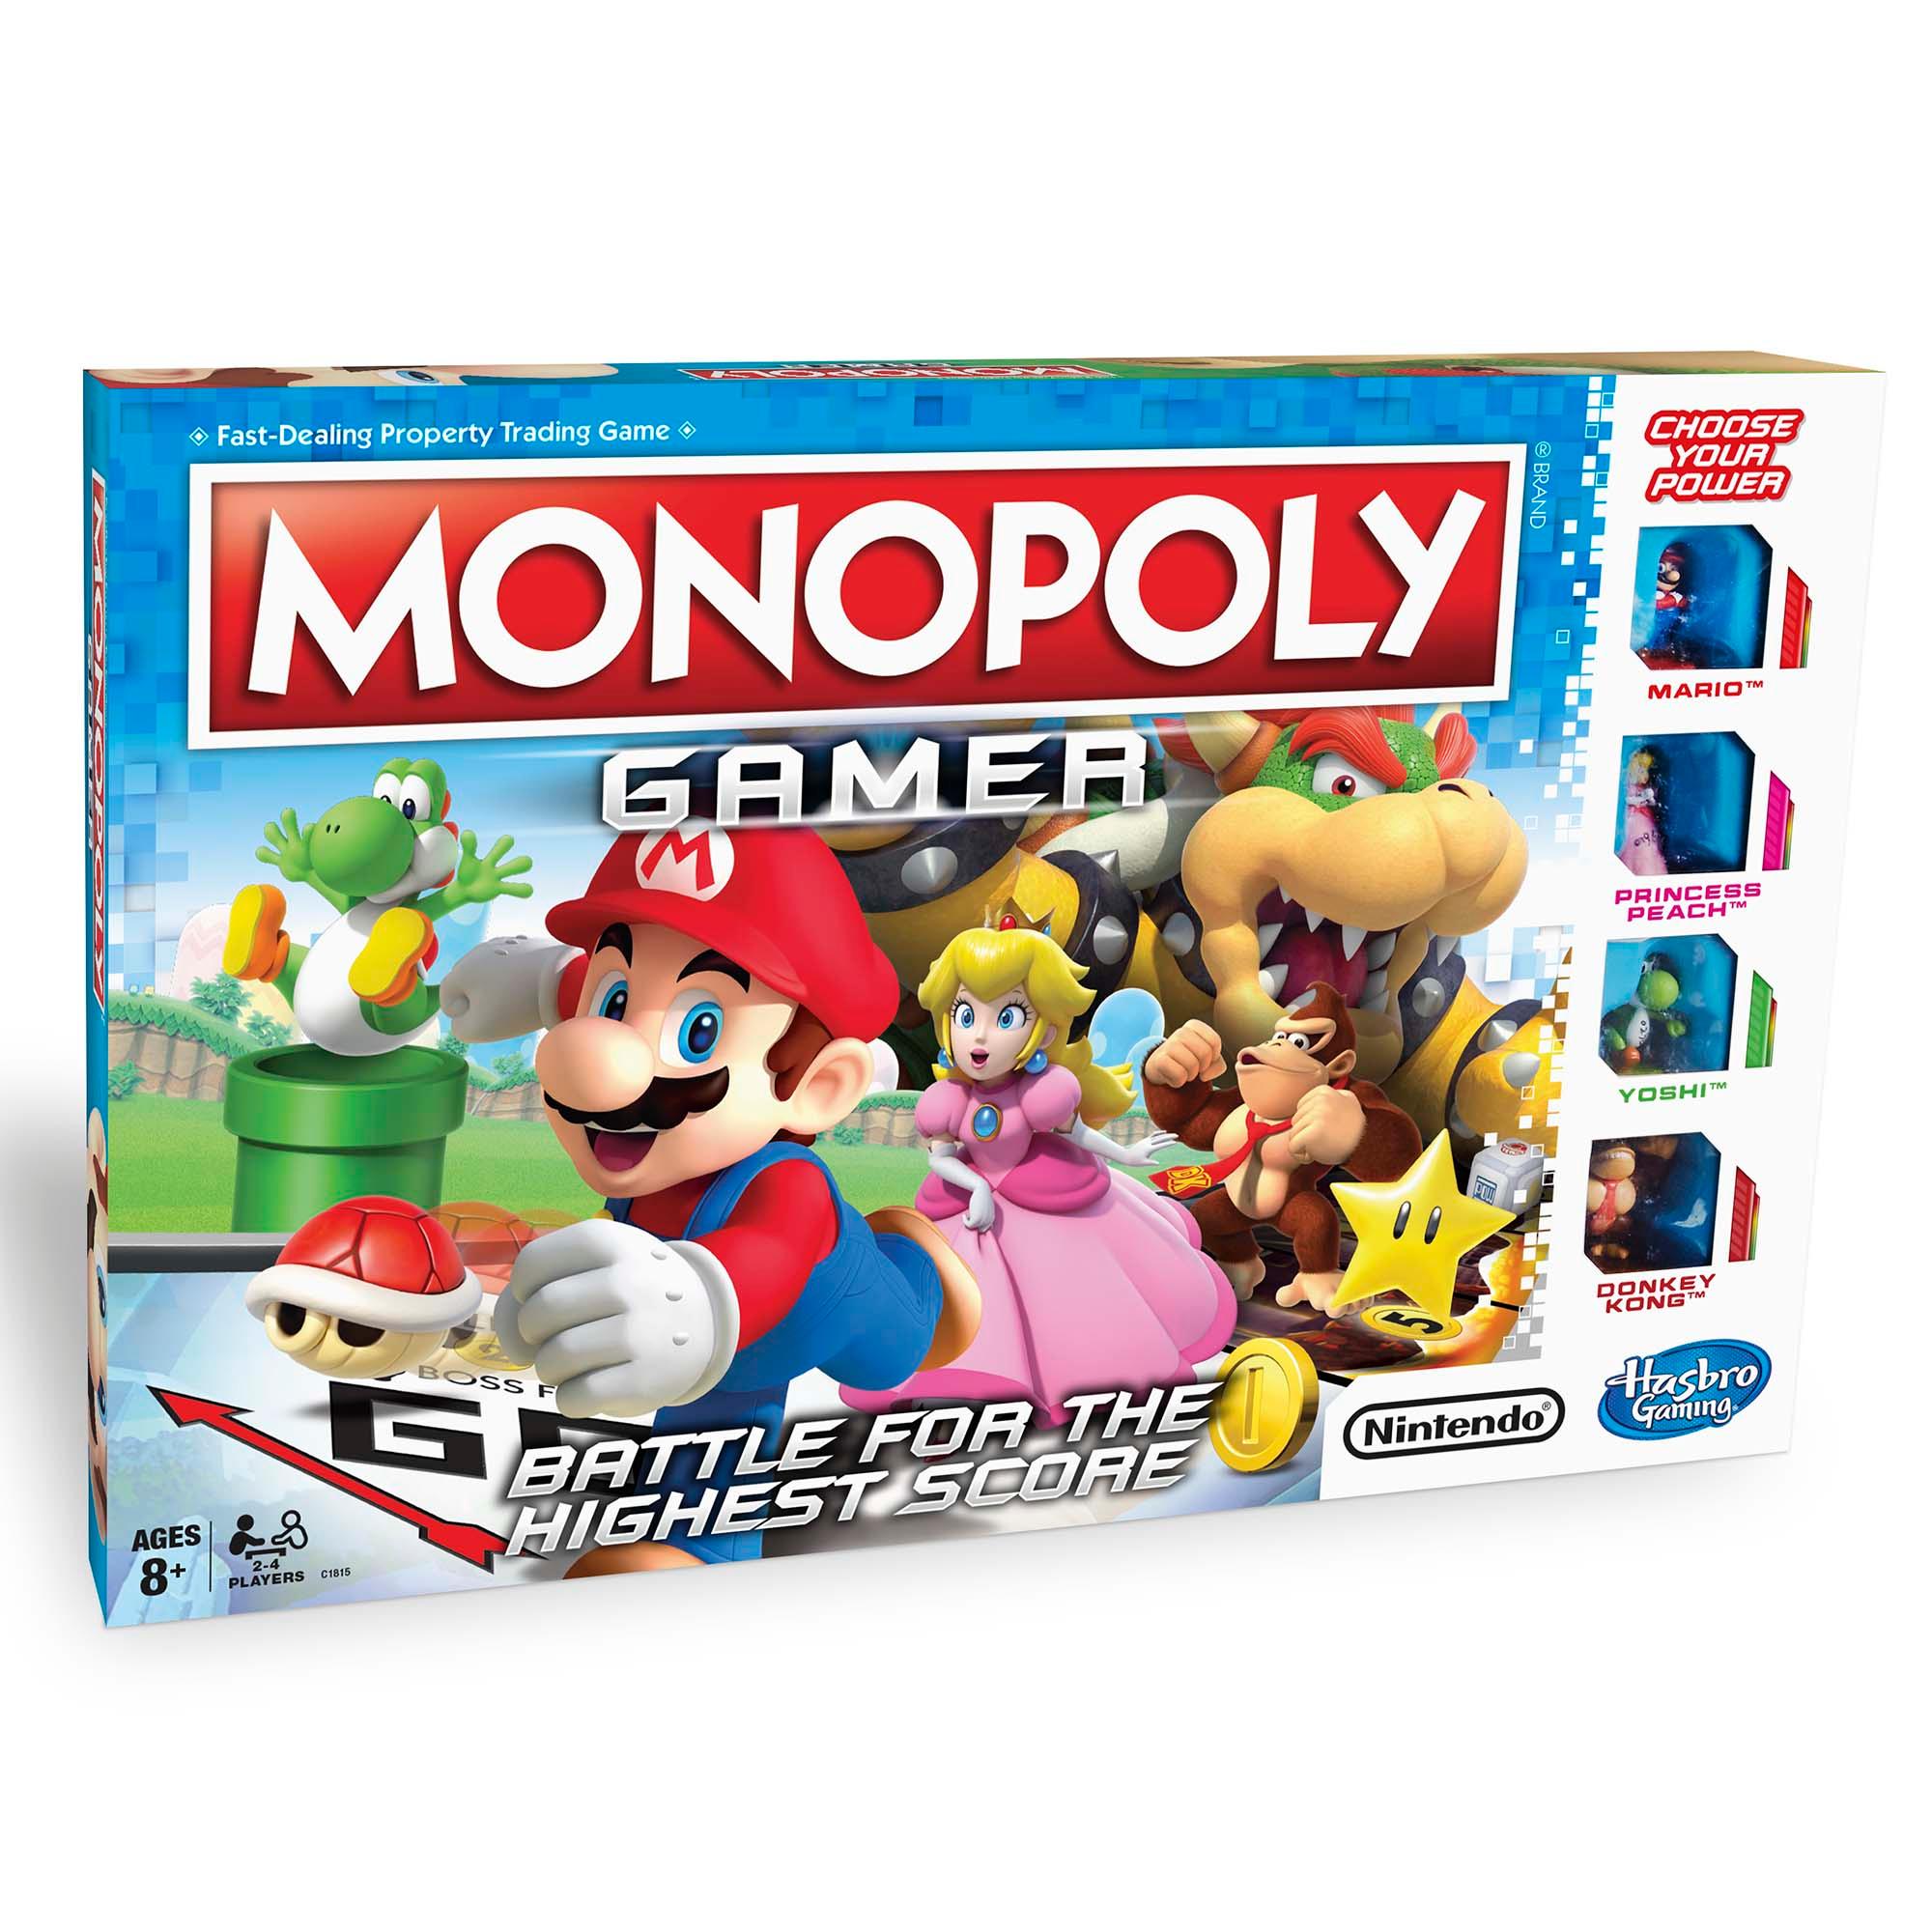 Monopoly モノポリー ゲーマー スーパーマリオ